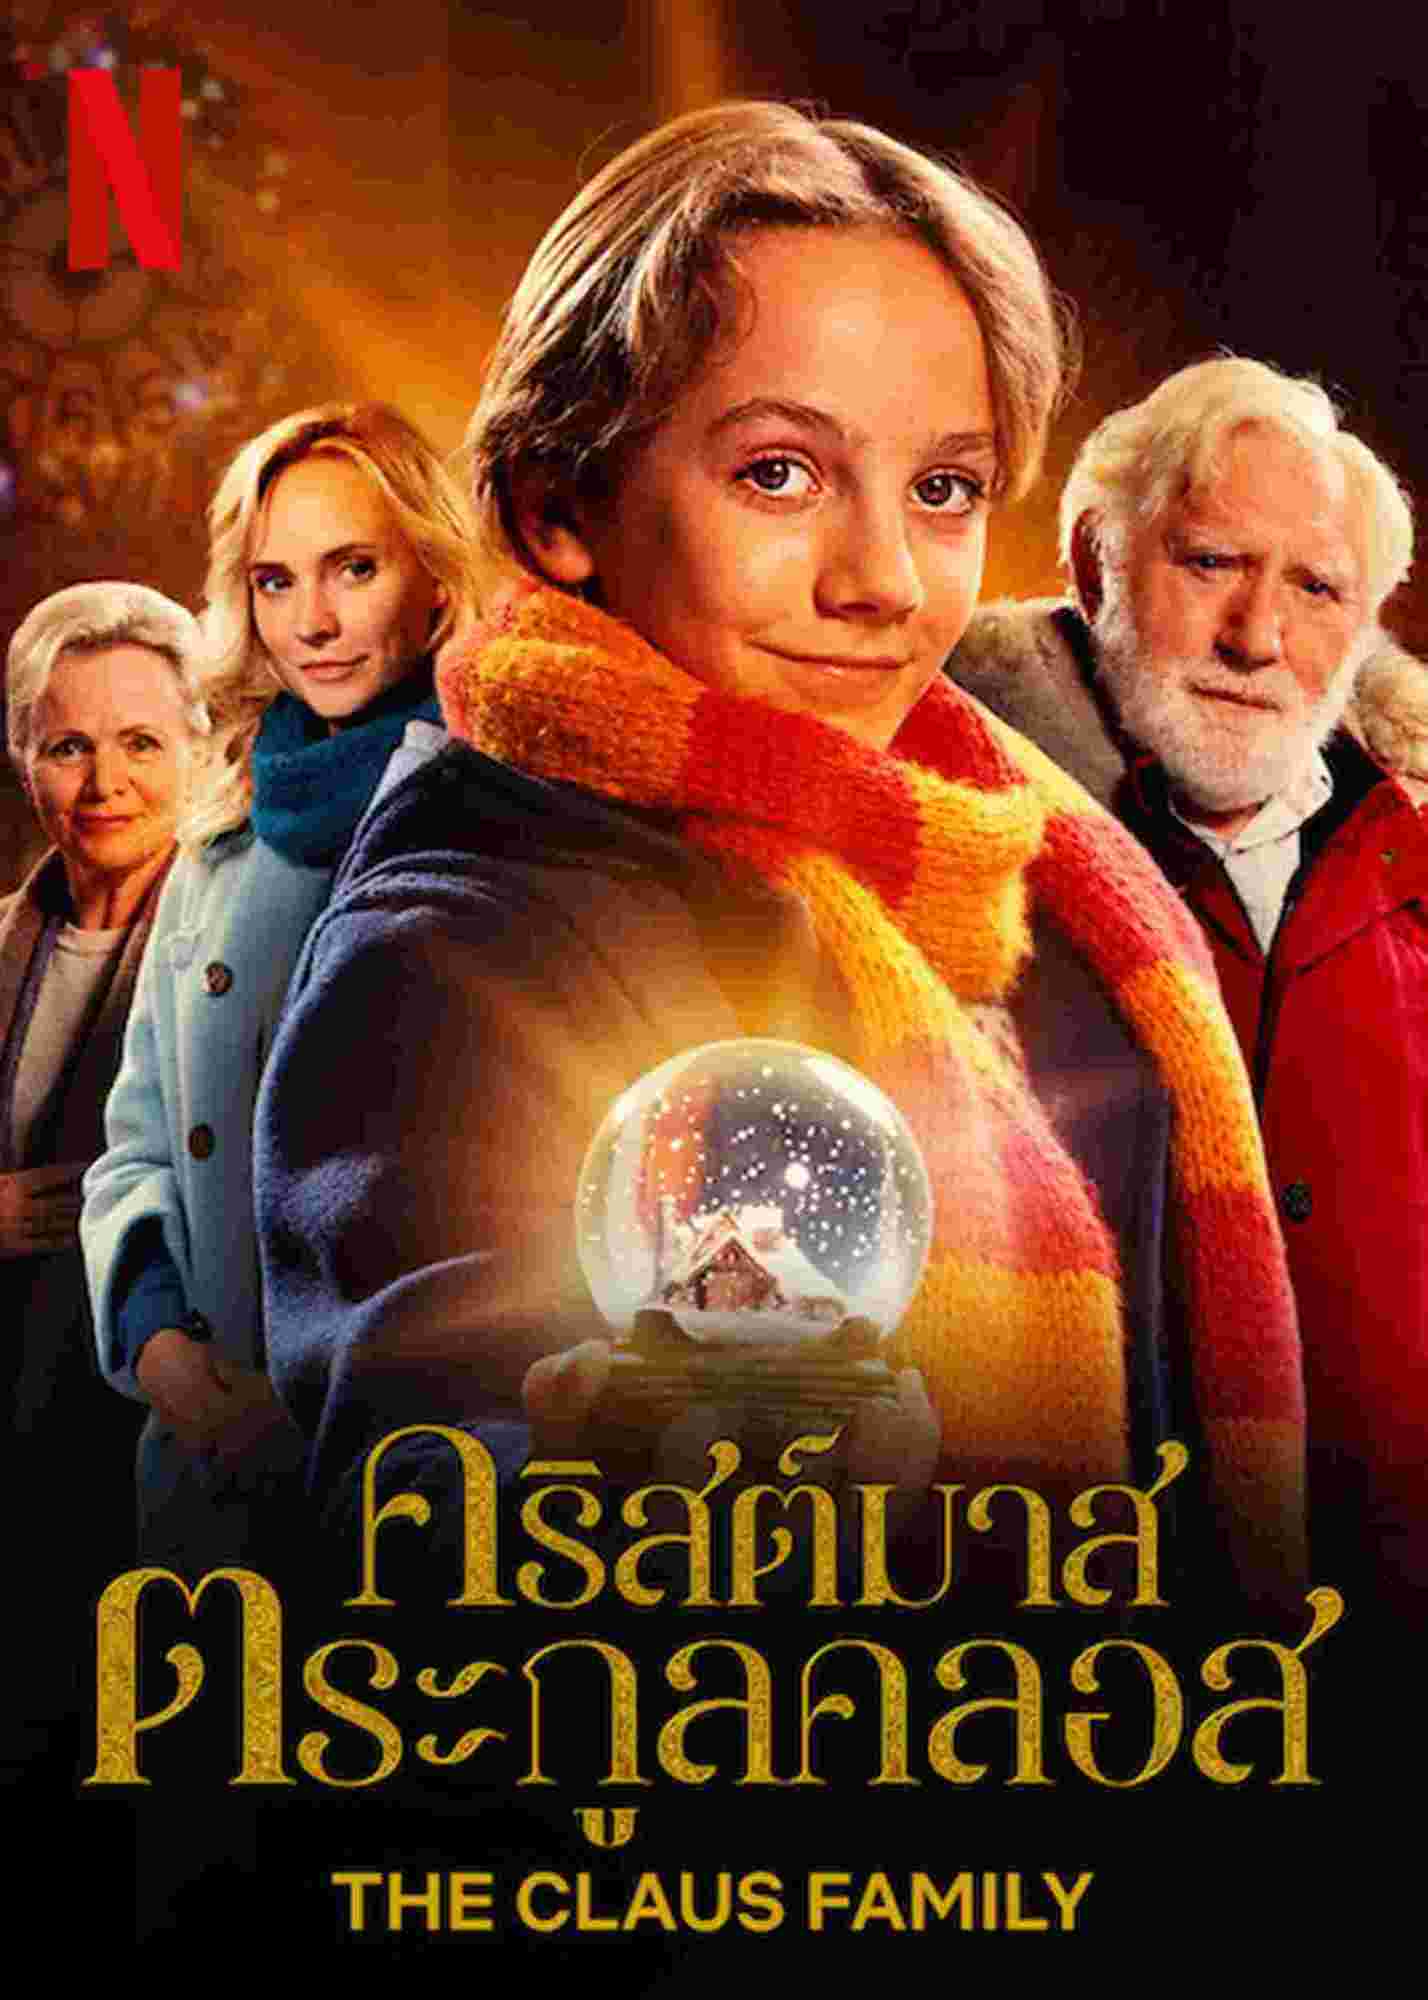 ดูซีรีย์ The Claus Family (2020) คริสต์มาสตระกูลคลอส ซับไทย HD เต็มเรื่อง ดูฟรี